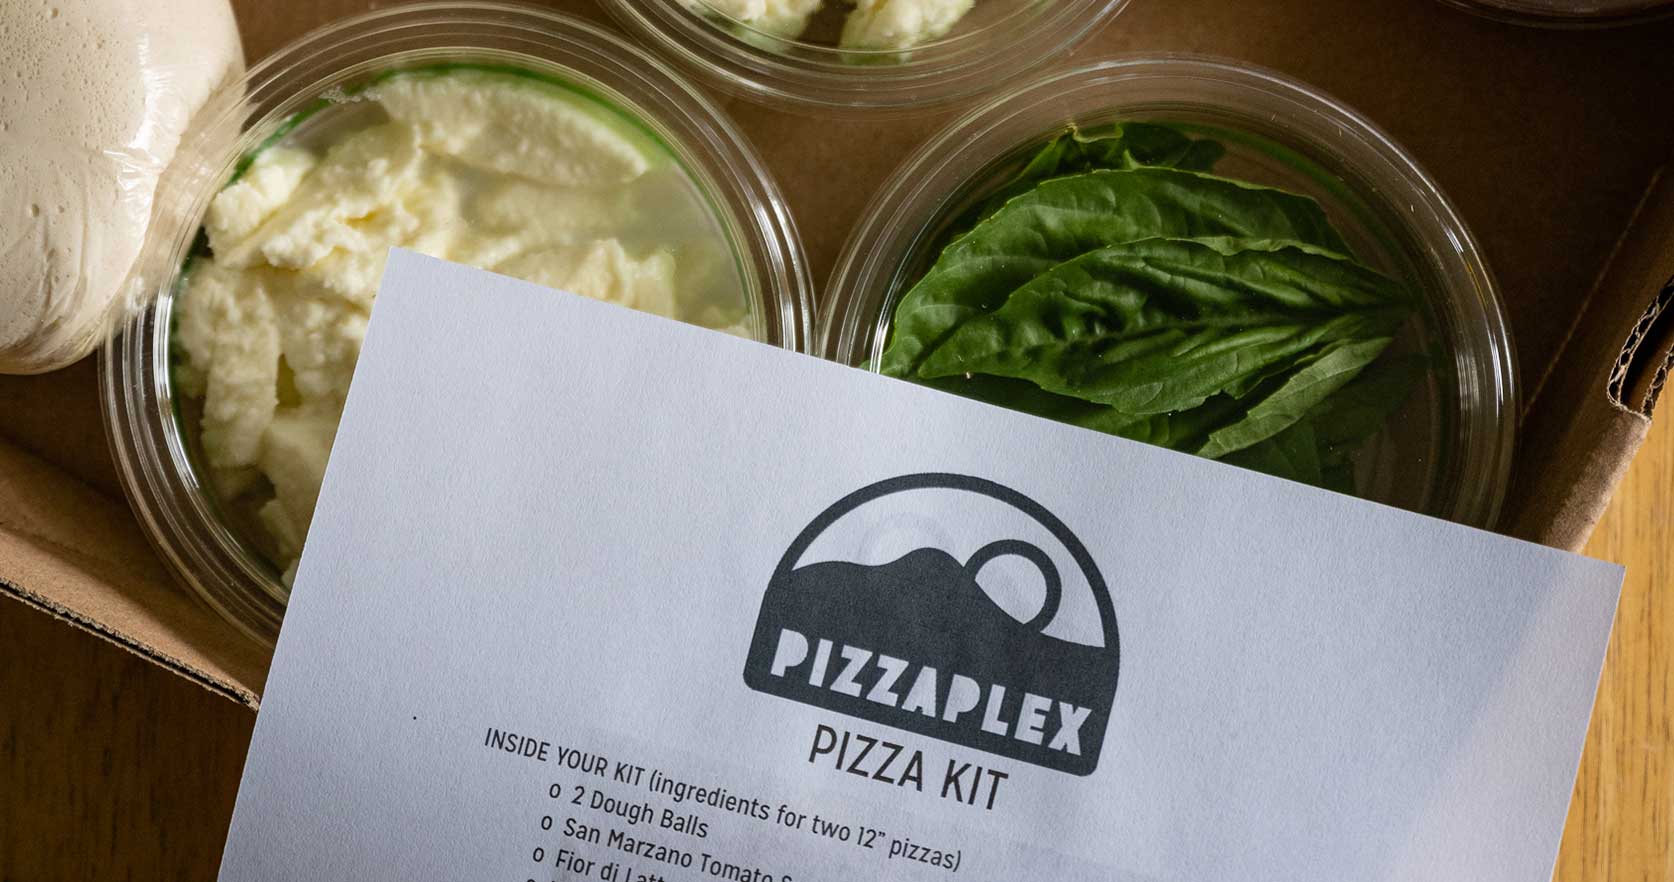 A PizzaPlex pizza kit